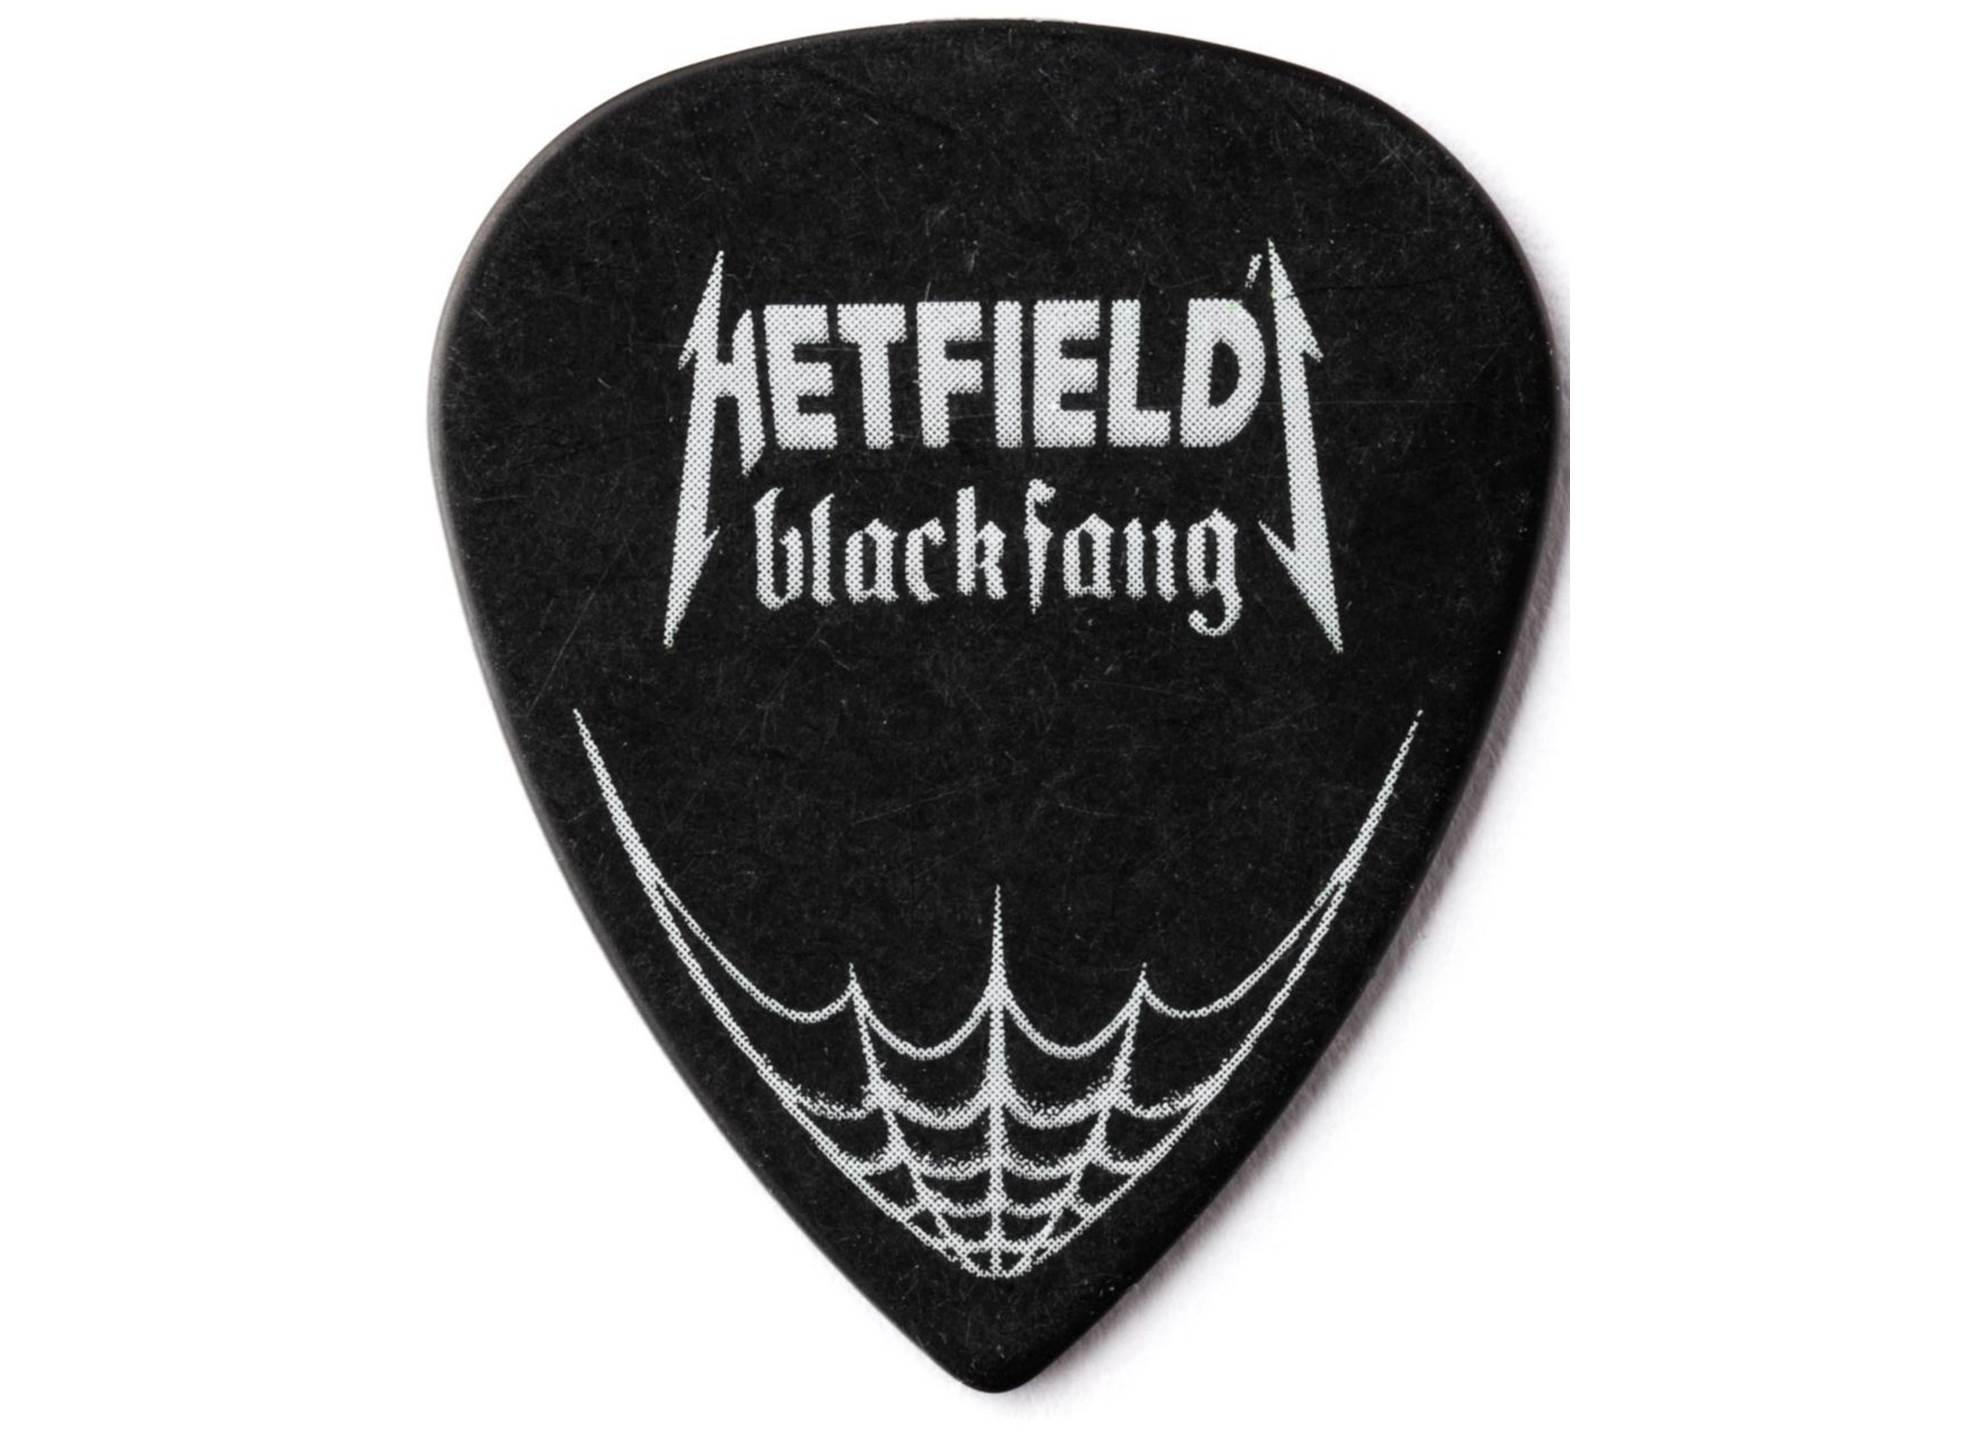 Hetfield Black Fang 0.94 6-pack